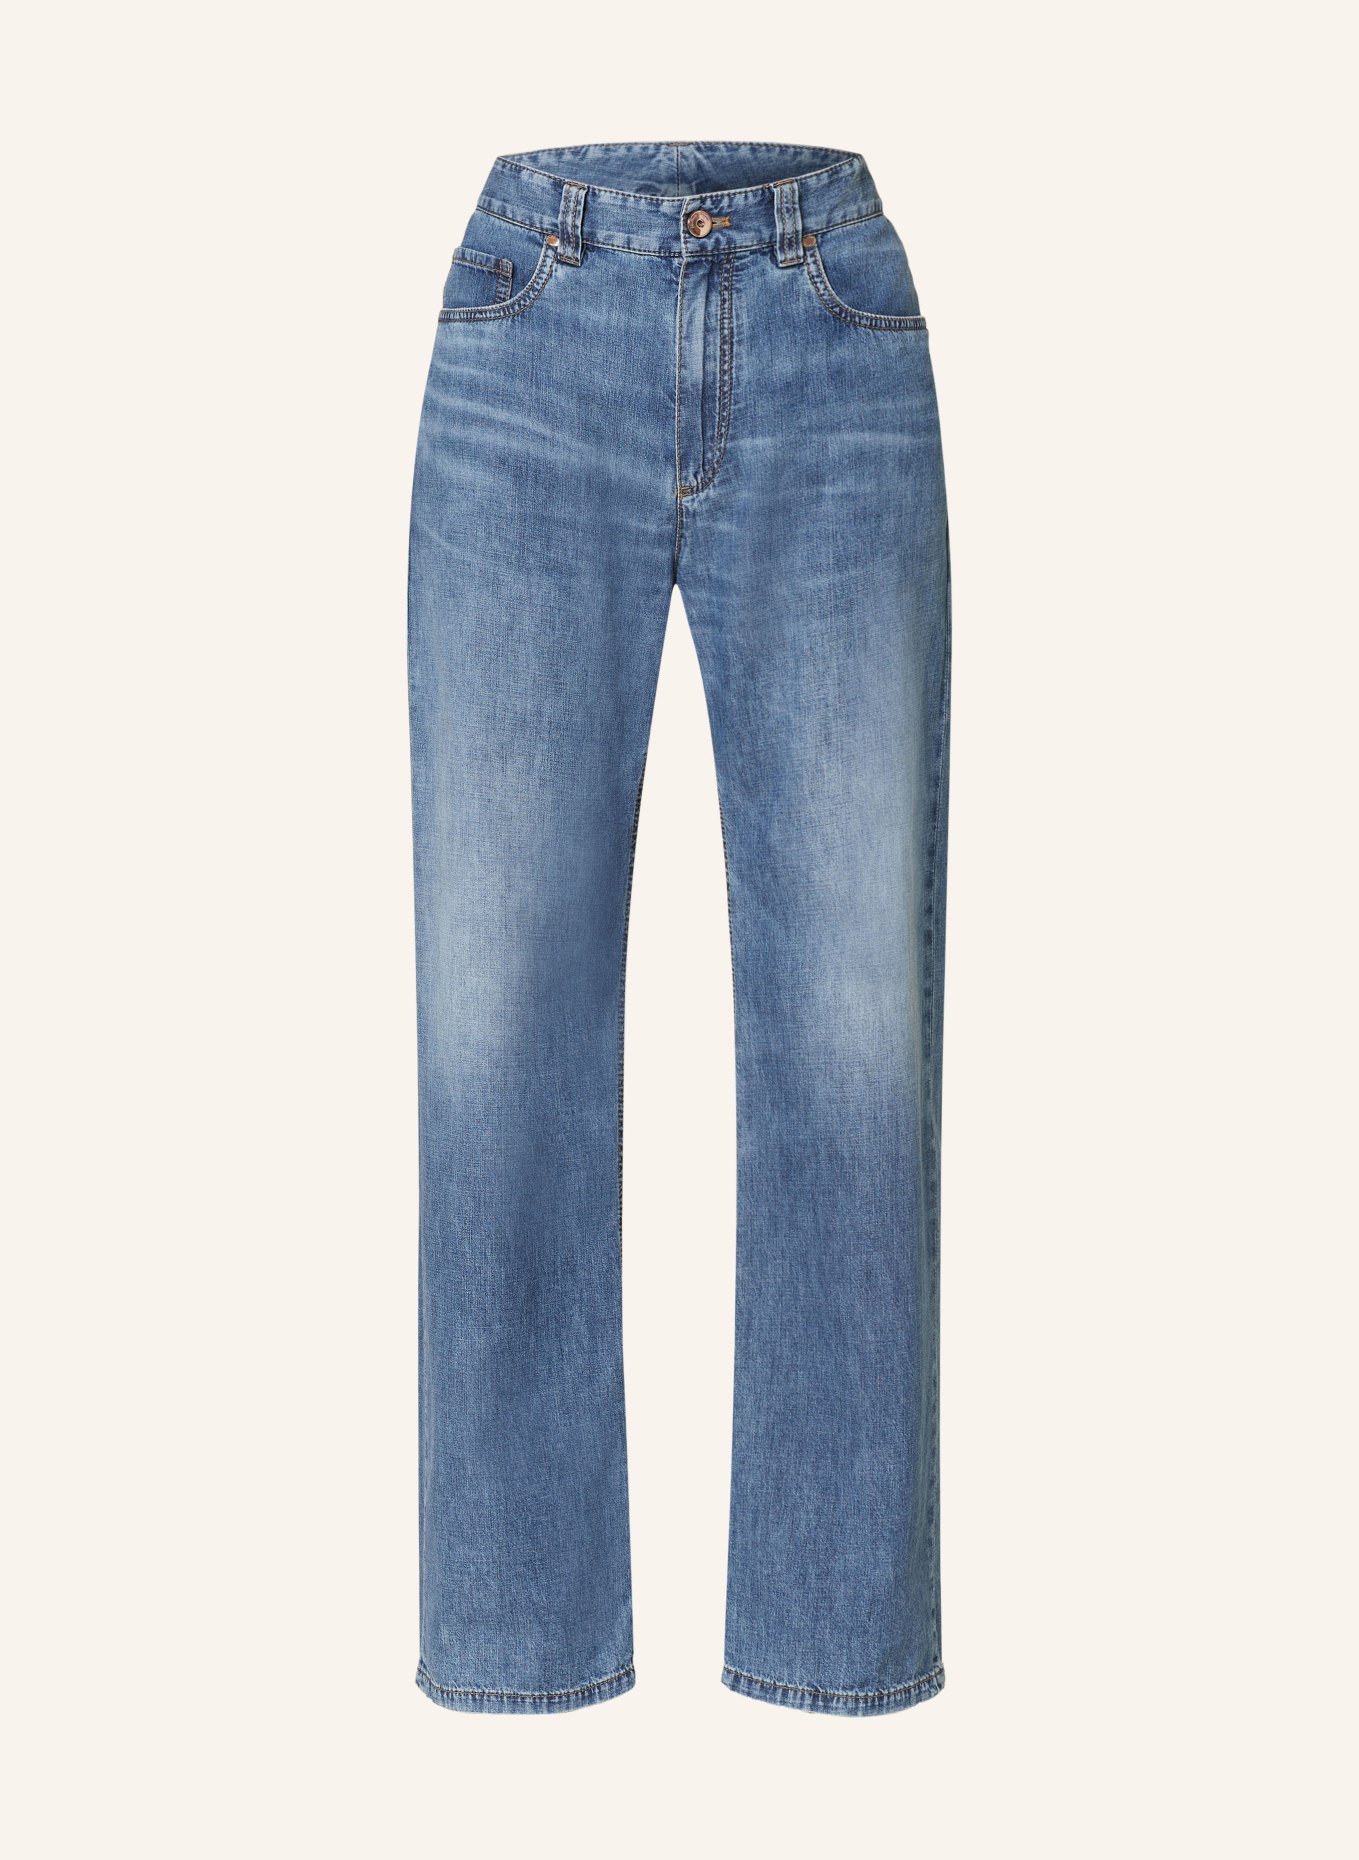 BRUNELLO CUCINELLI Jeans, Farbe: C8982 BLU VINTAGE DENIMCON BAFFI (Bild 1)